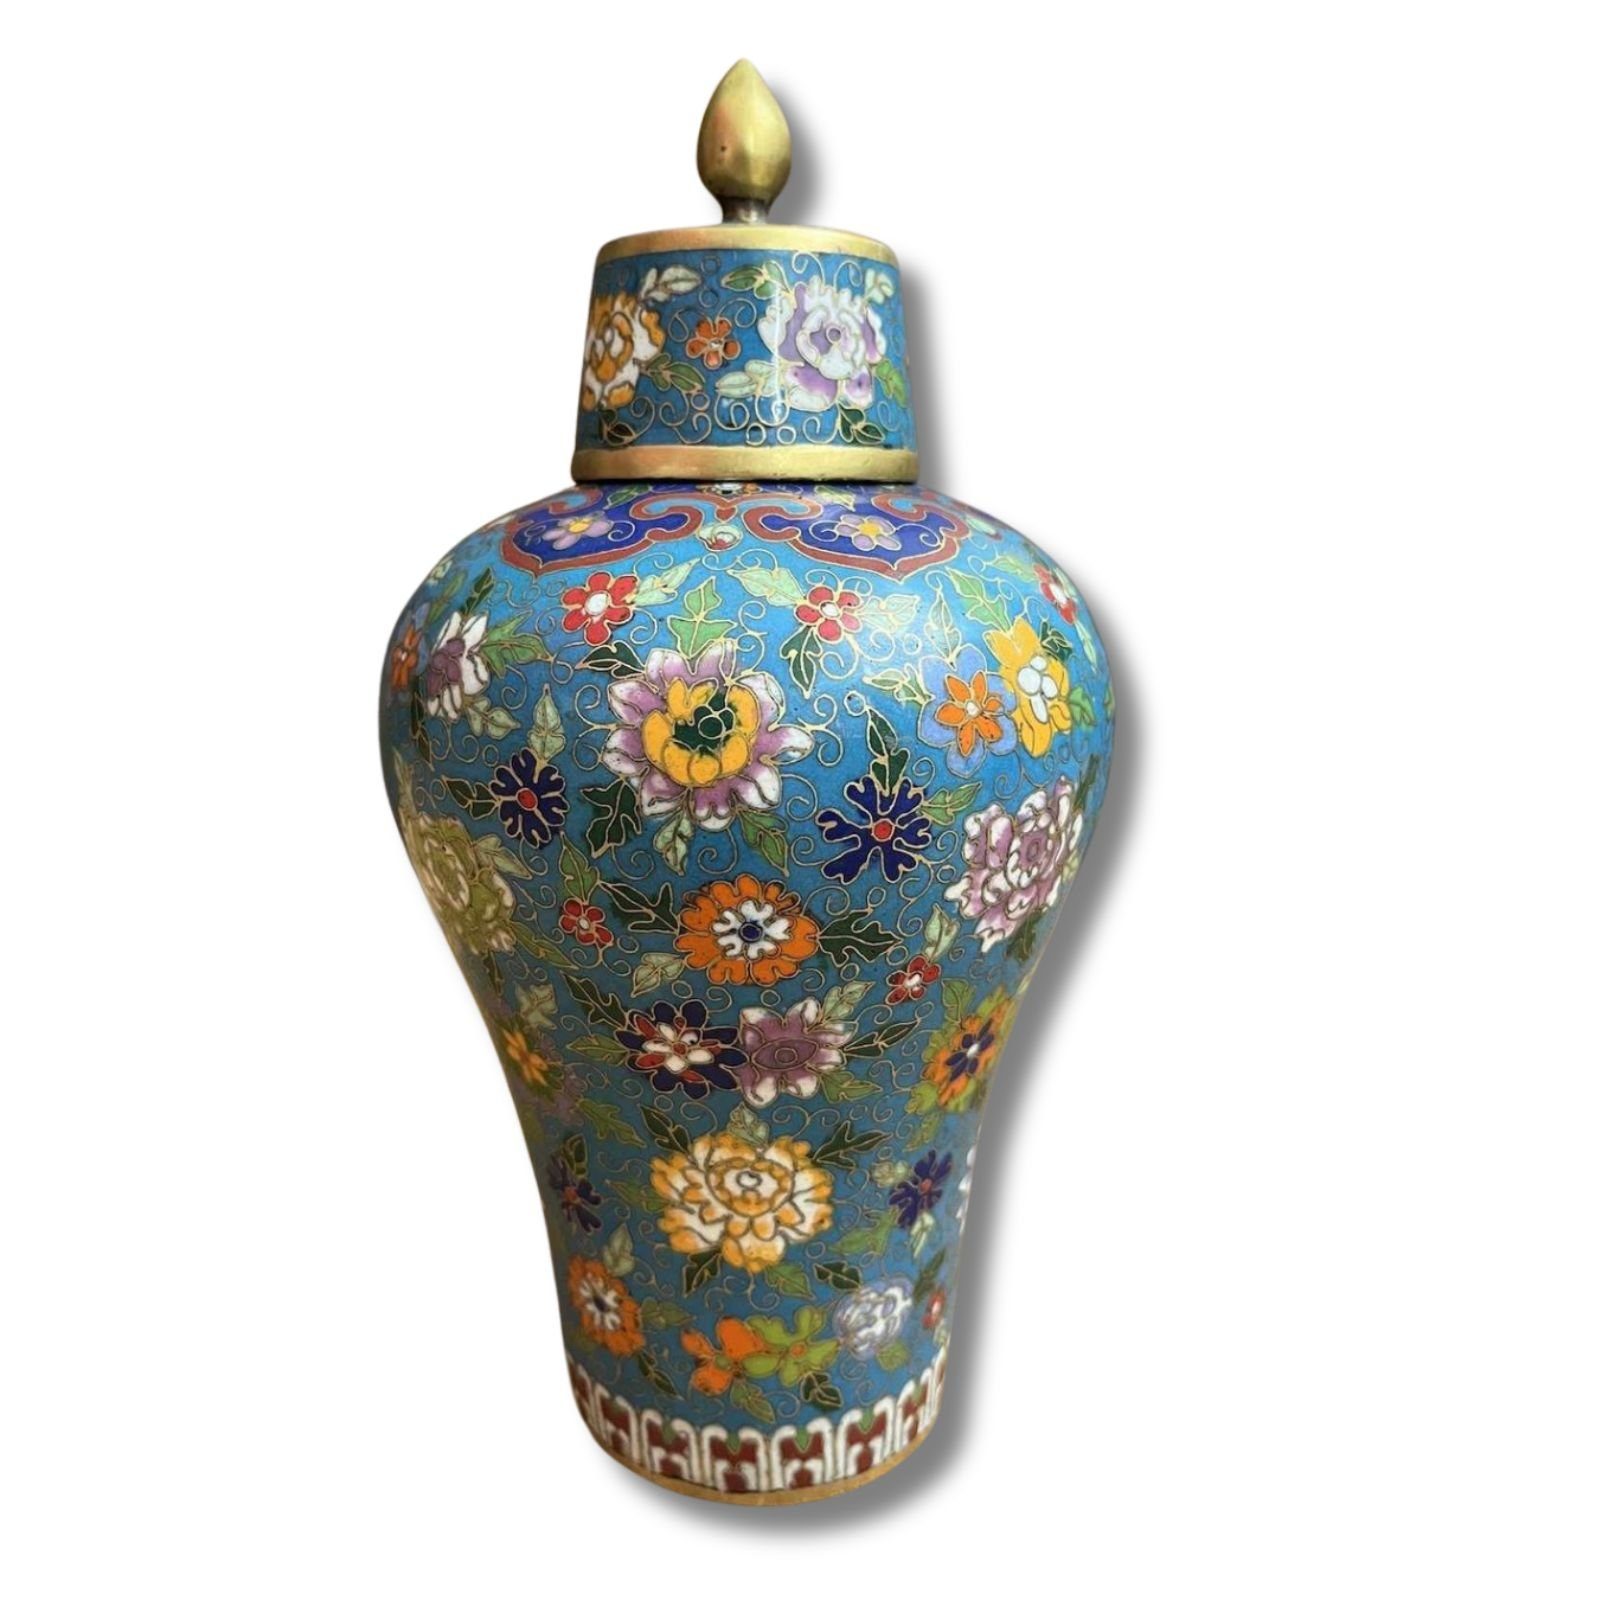 Asien LifeStyle Tischvase Cloisonne Vase China Bronze Gefäß 23,5cm groß